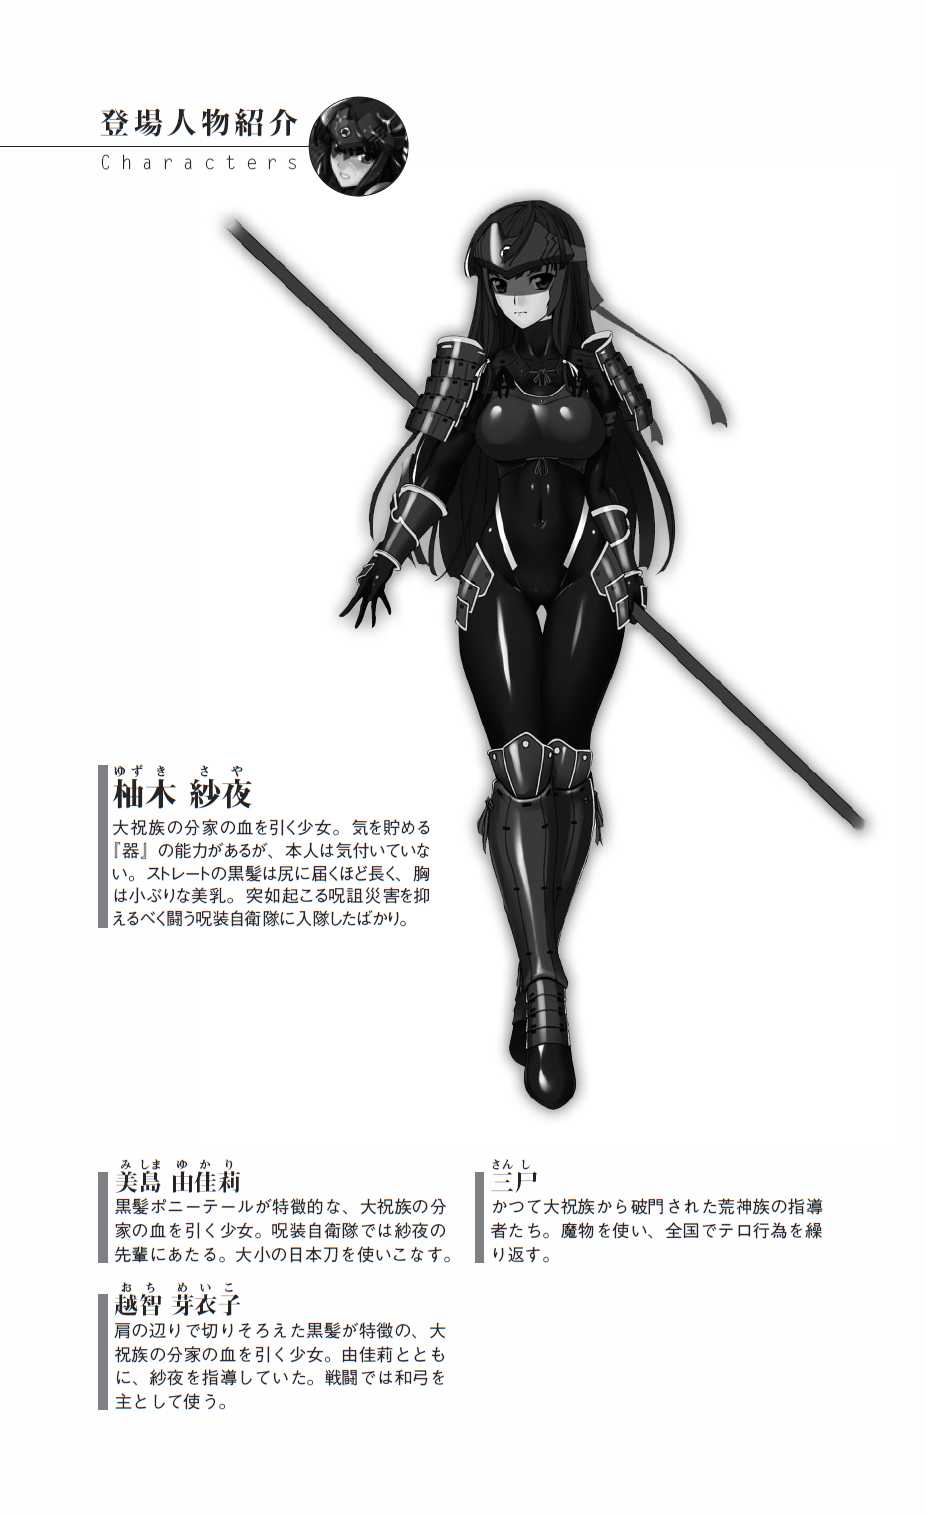 Masenki Saya - Injoku no Touen (illustrations only) 魔戦姫紗夜 淫辱の闘宴